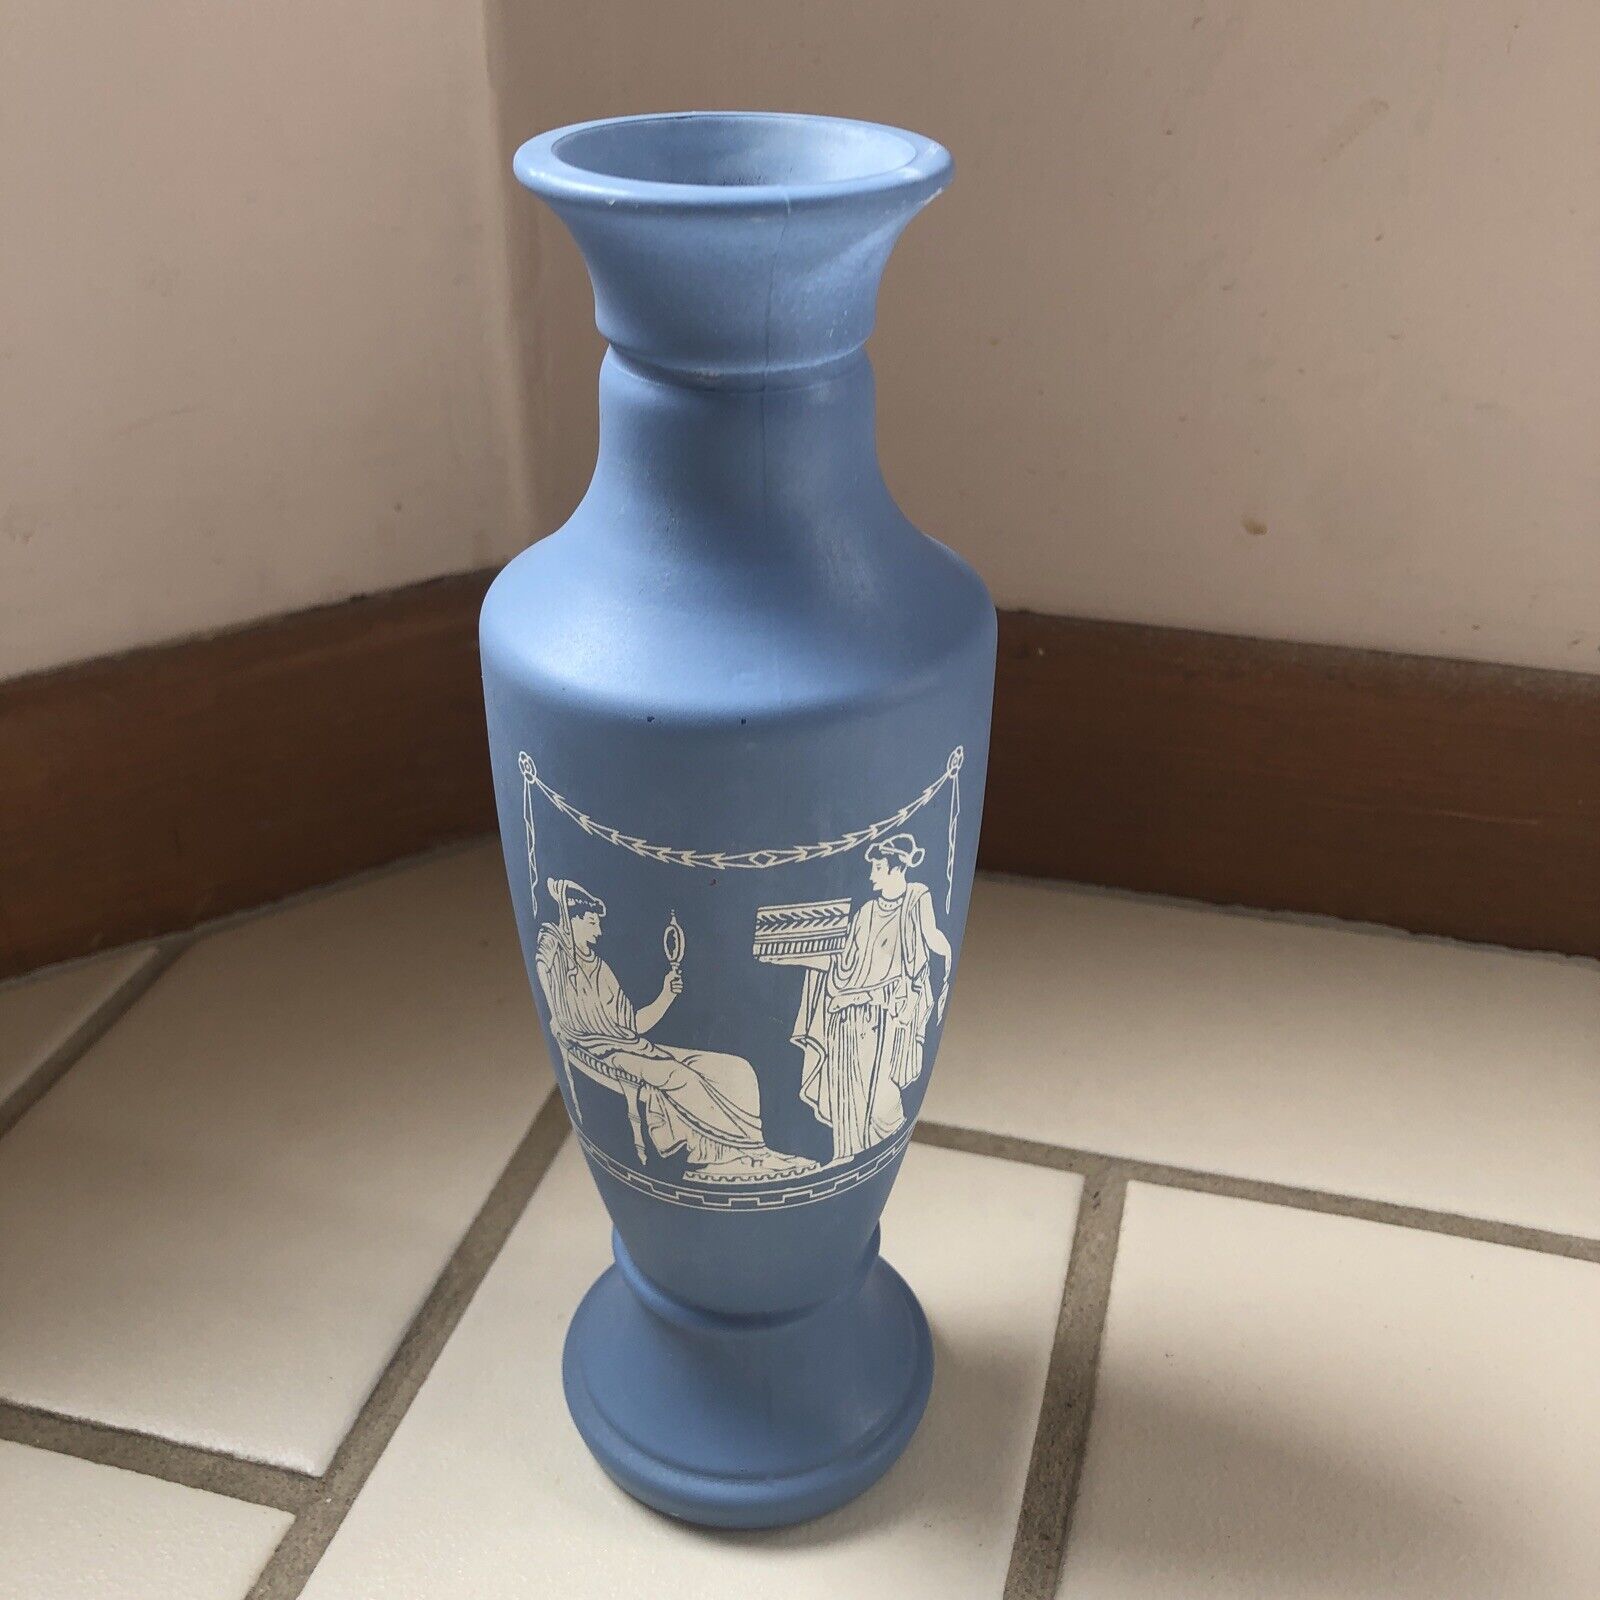 Bud Vase Blue White Decorative Wedgwood Look